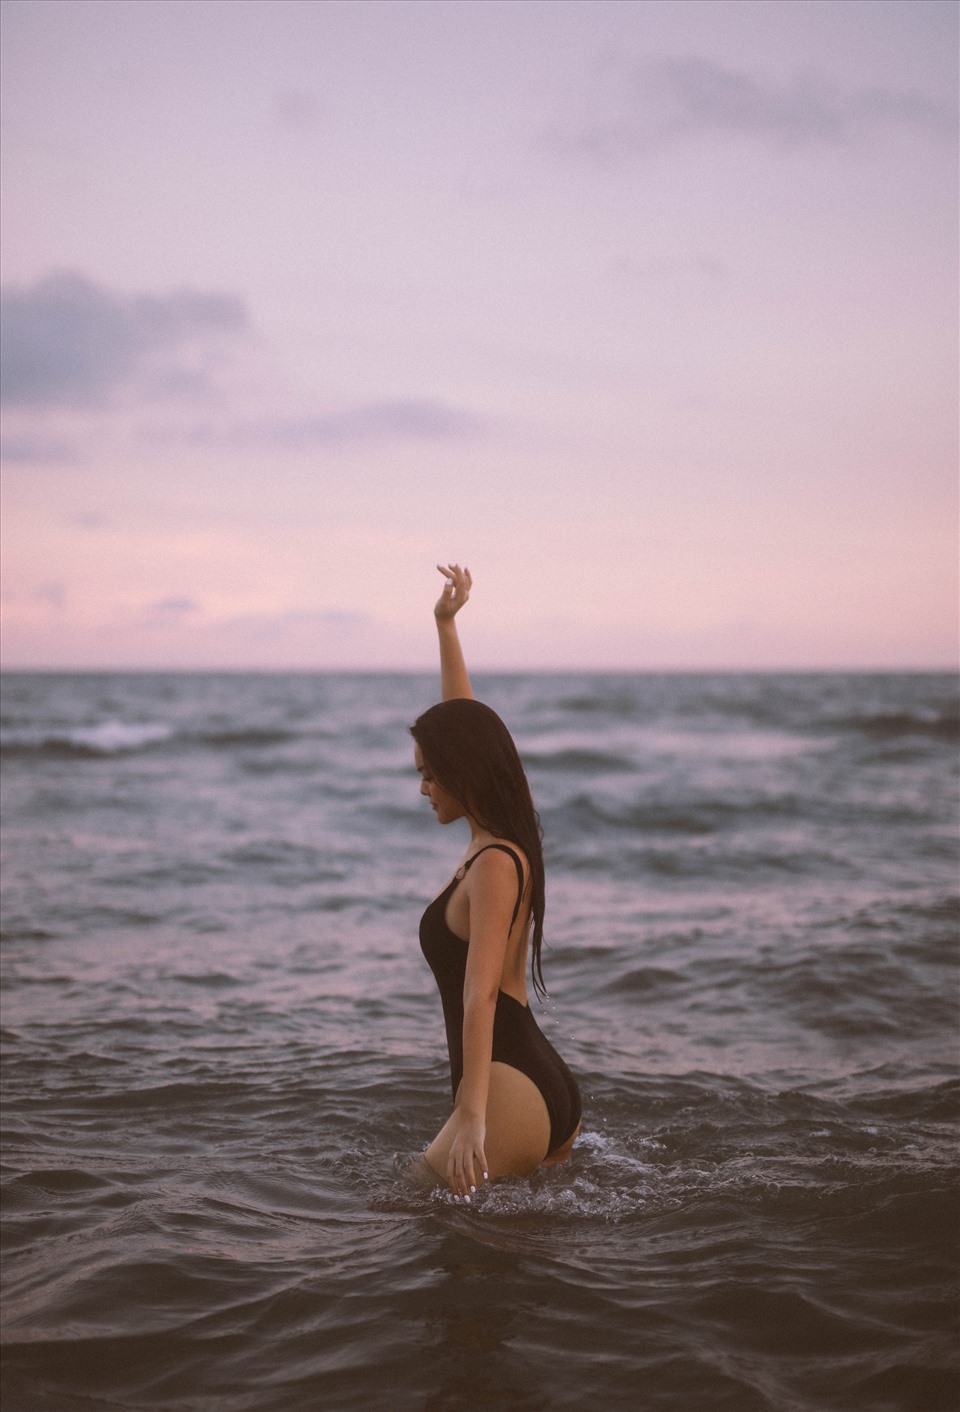 Mới đây, Phạm Quỳnh Anh vừa chia sẻ bộ ảnh nữ ca sĩ diện bikini, thả dáng giữa khung cảnh thiên nhiên thơ mộng.